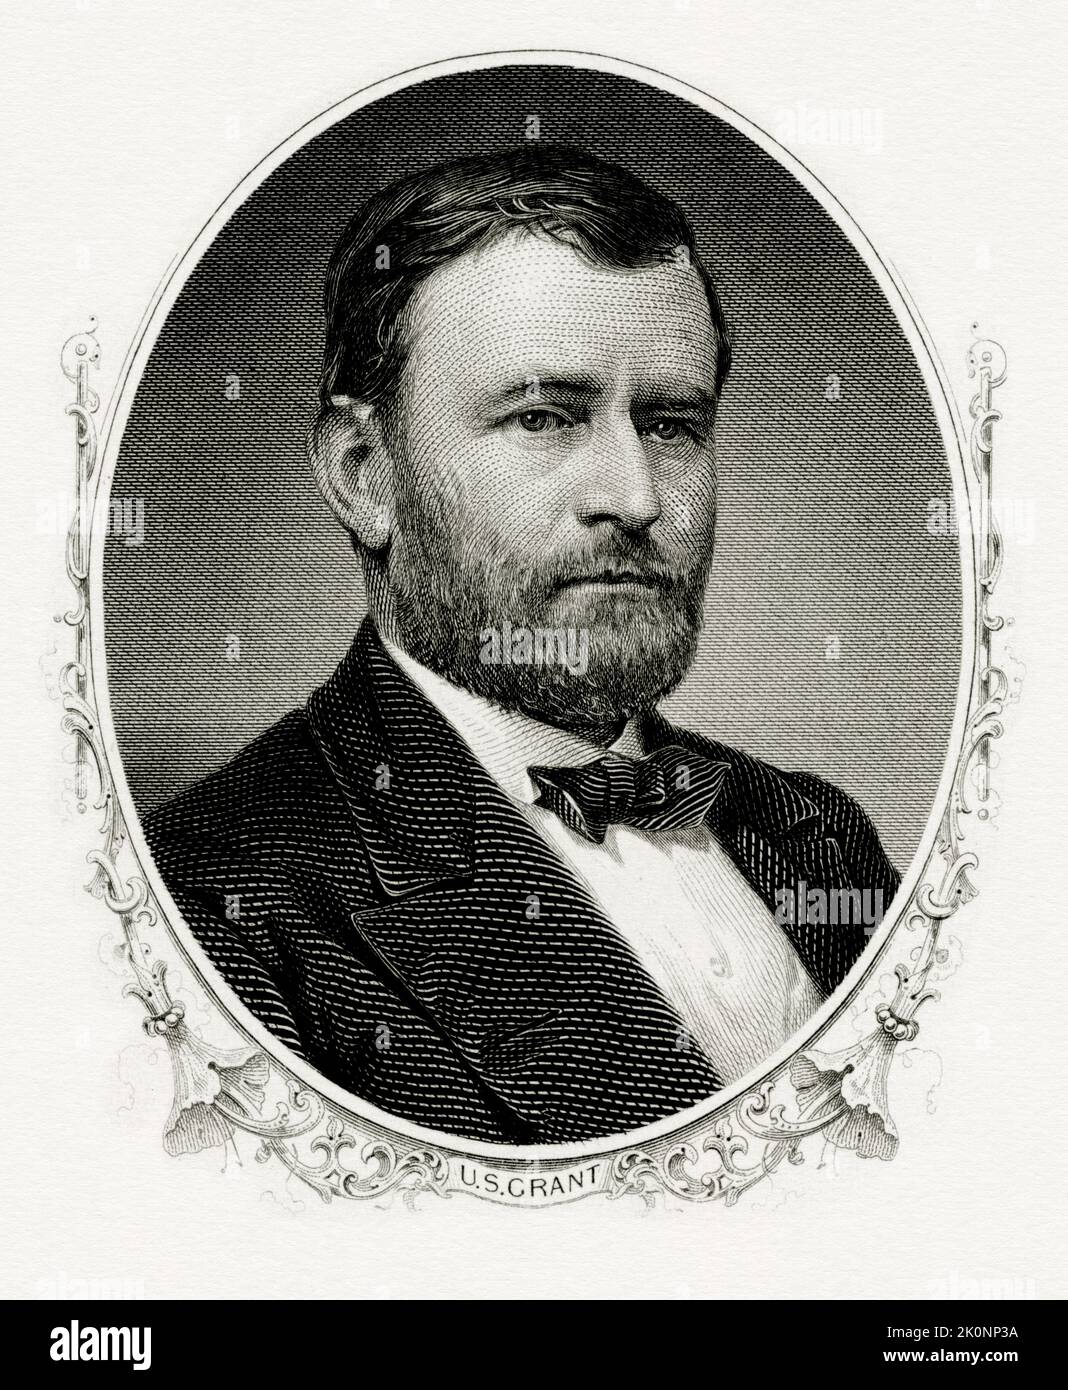 Un portrait gravé du président Ulysses Grant, président des États-Unis en 18th. Banque D'Images